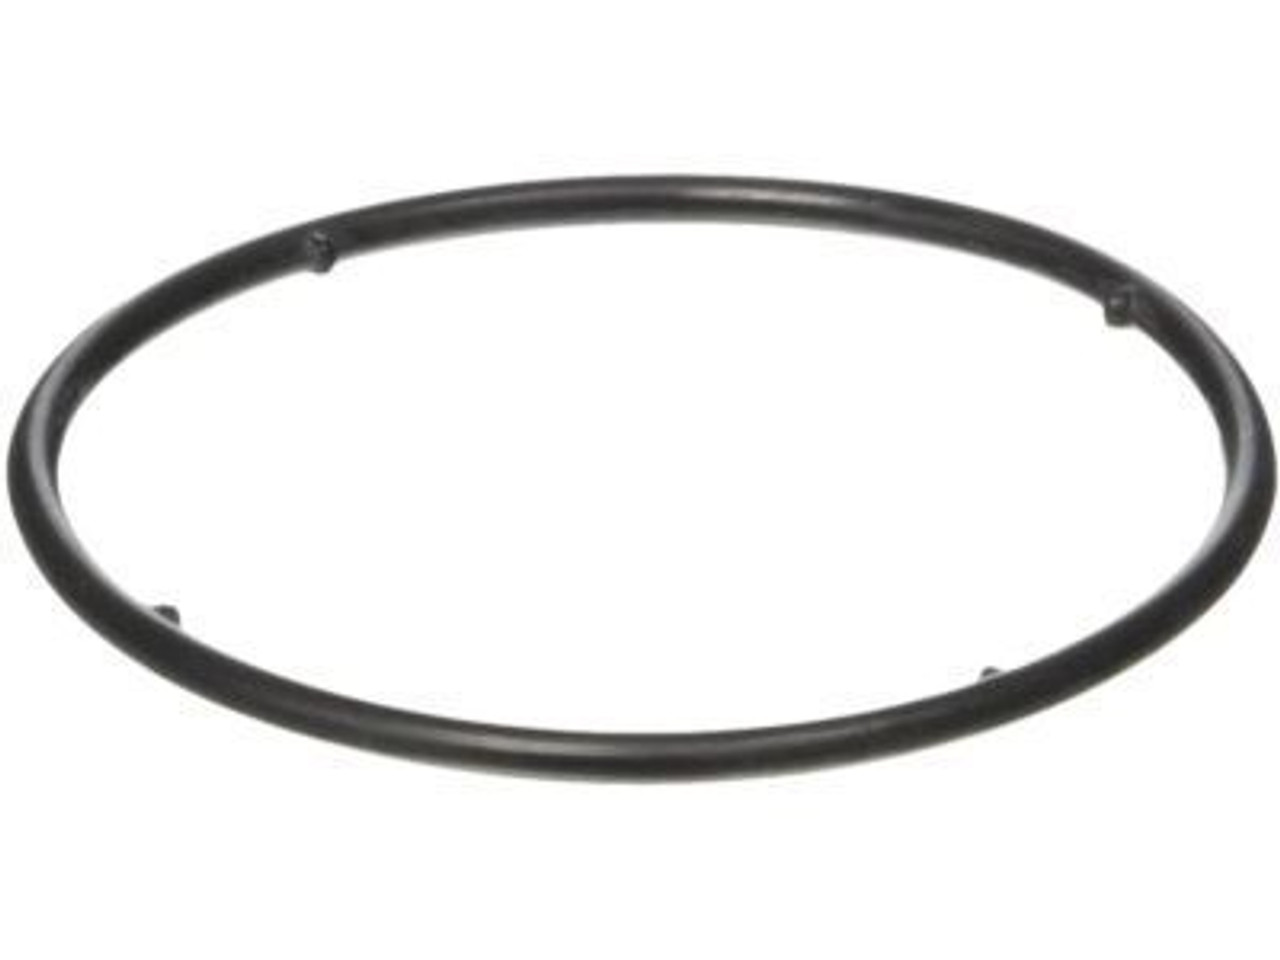 O-Ring- Toyota OEM O-Ring For Oil Cooler 90301-68005

